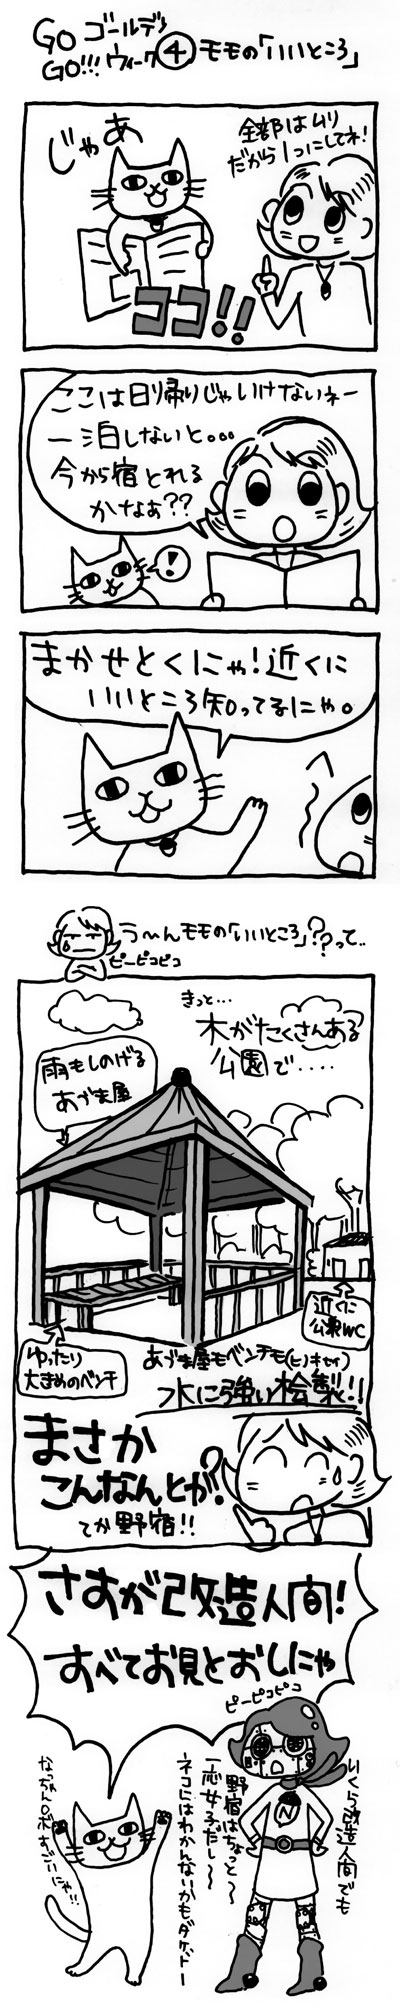 木工漫画　GO GO!!! ゴールデンウィーク④　モモのいいところ　0506